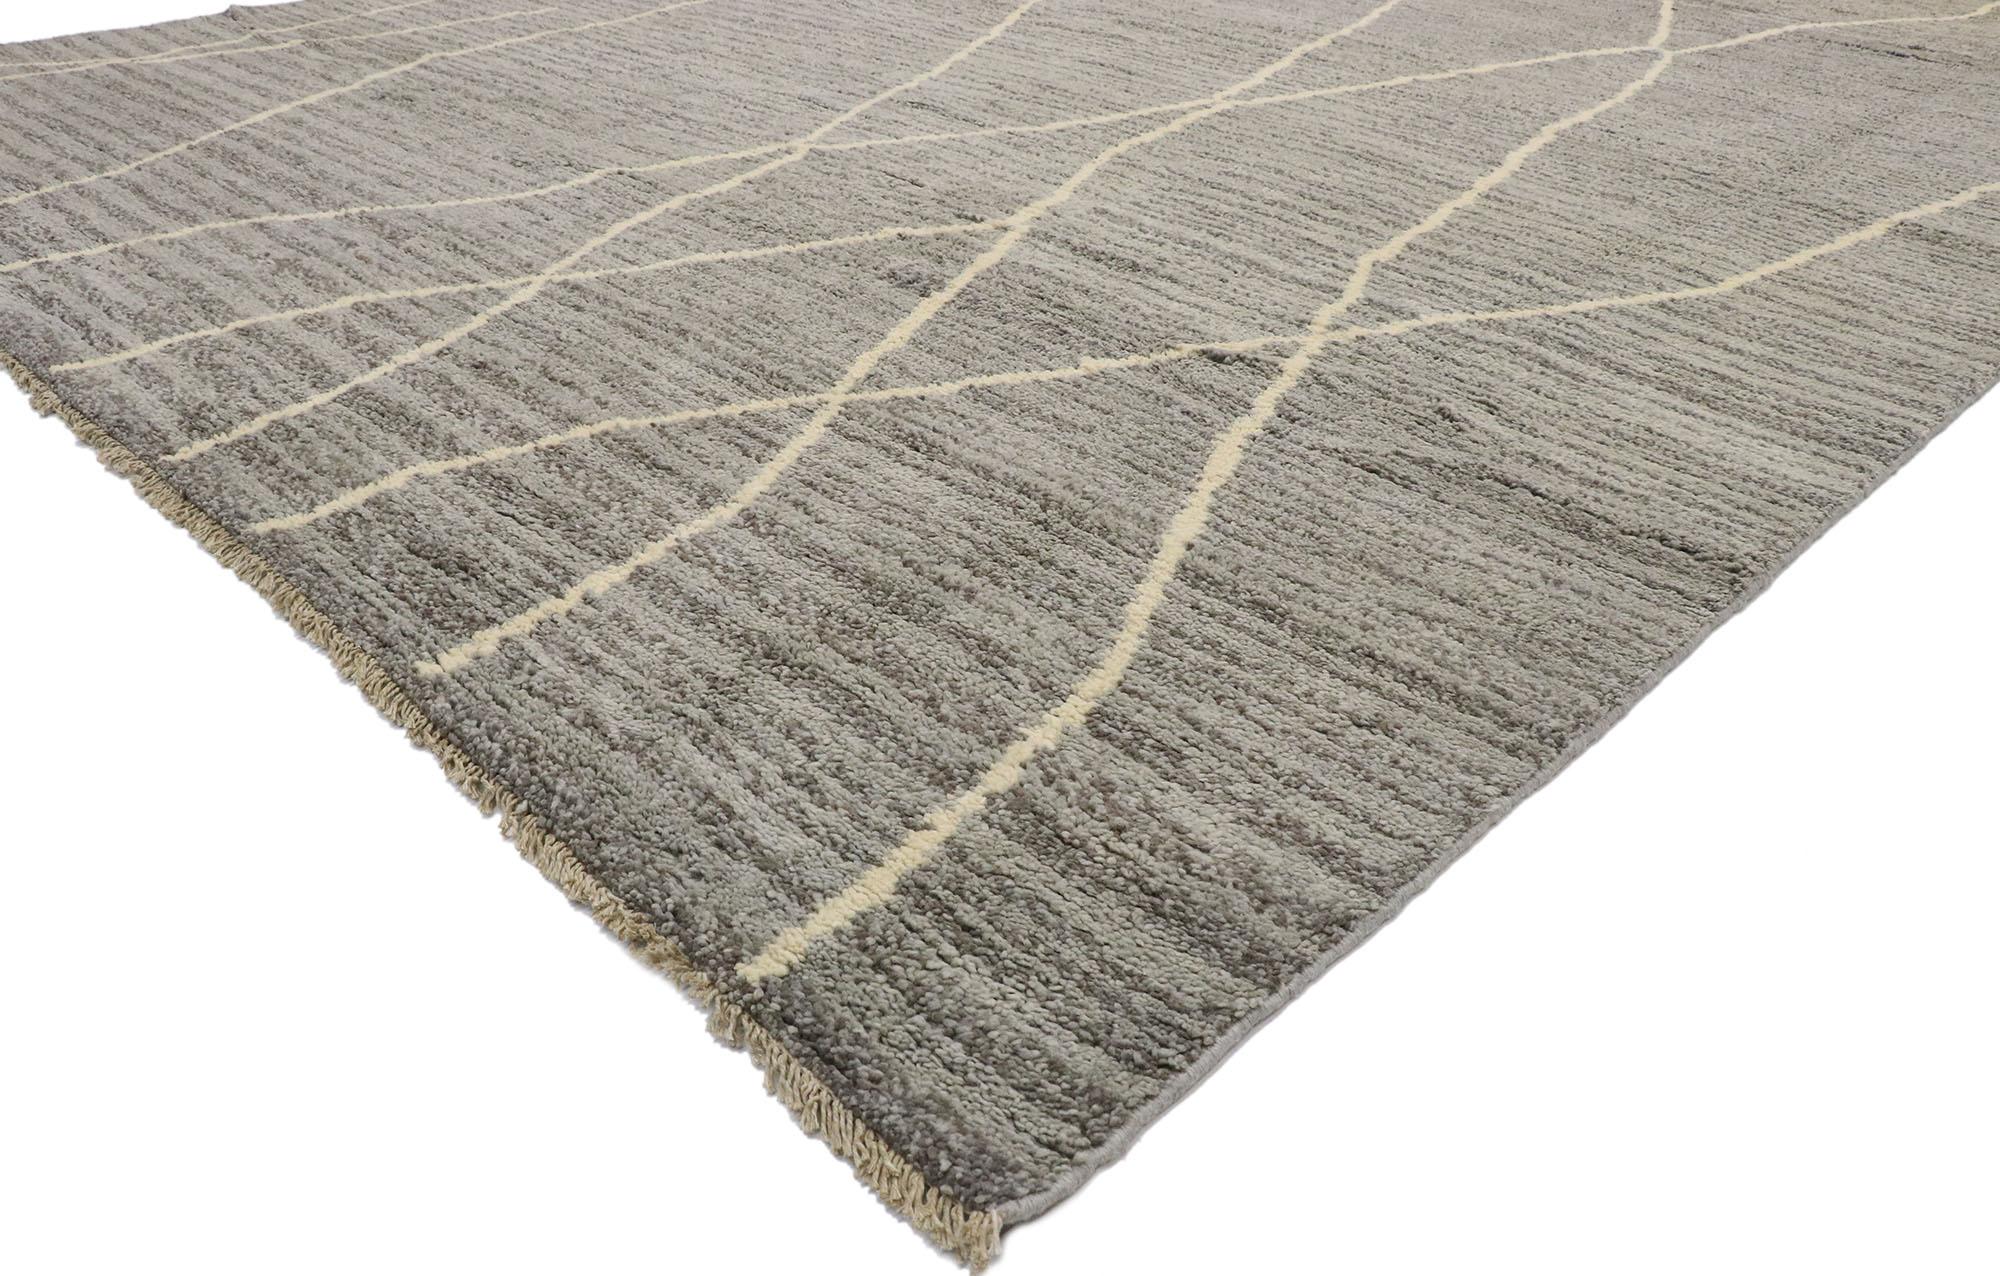 80649, neuer zeitgenössischer grauer marokkanischer Teppich im modernen schwedischen Mysigt-Stil. Leuchtende Grautöne und reiche Wellen von Abrash schaffen einen endlosen faszinierenden Effekt in diesem handgeknüpften Wollteppich im modernen